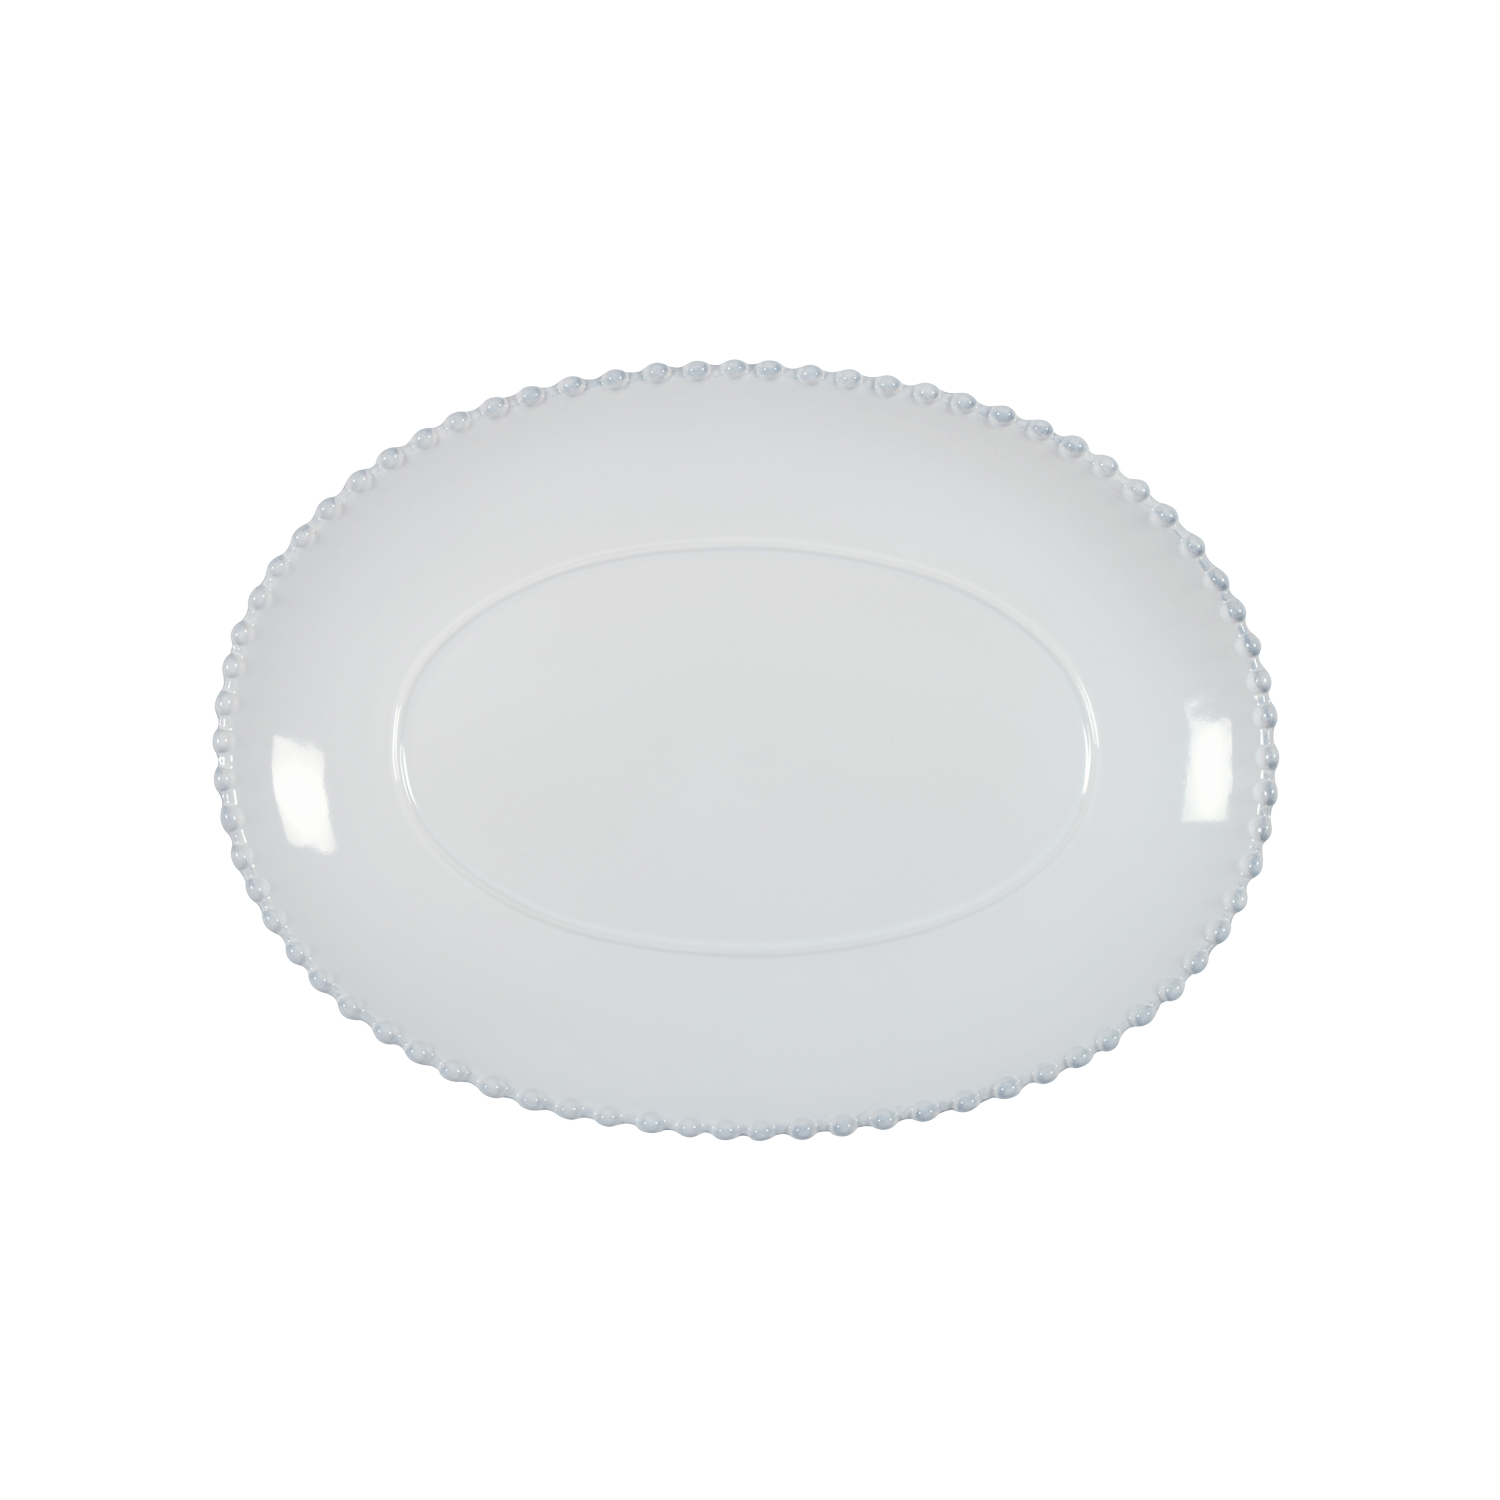 Pearl White Oval Platter Medium 34cm Gift